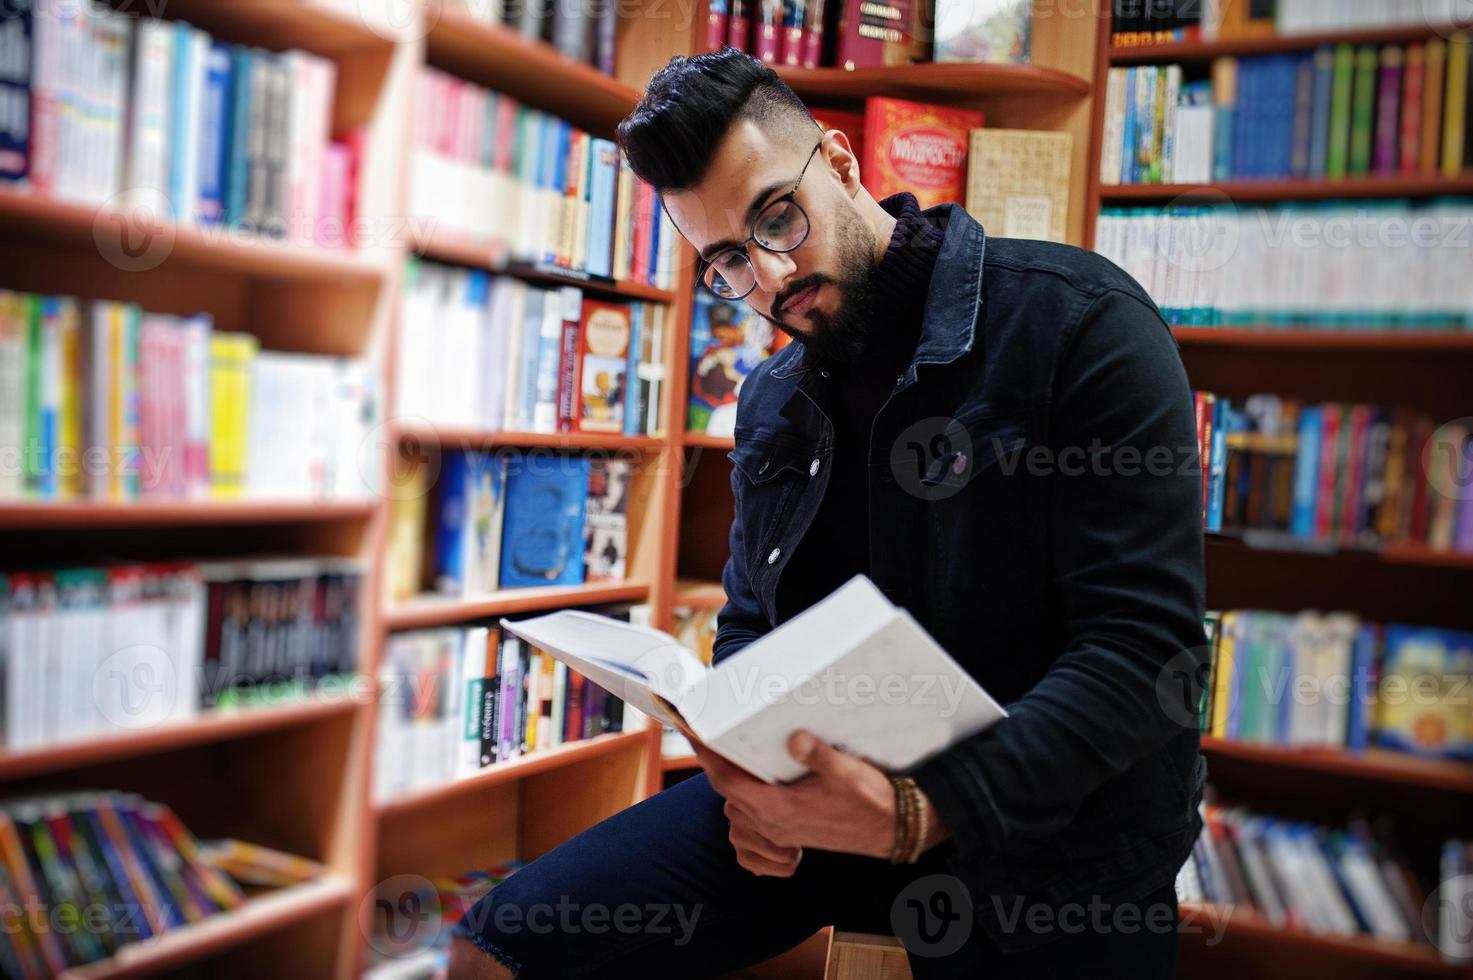 homem alto estudante árabe inteligente, use jaqueta jeans preta e óculos, na biblioteca com o livro nas mãos. foto